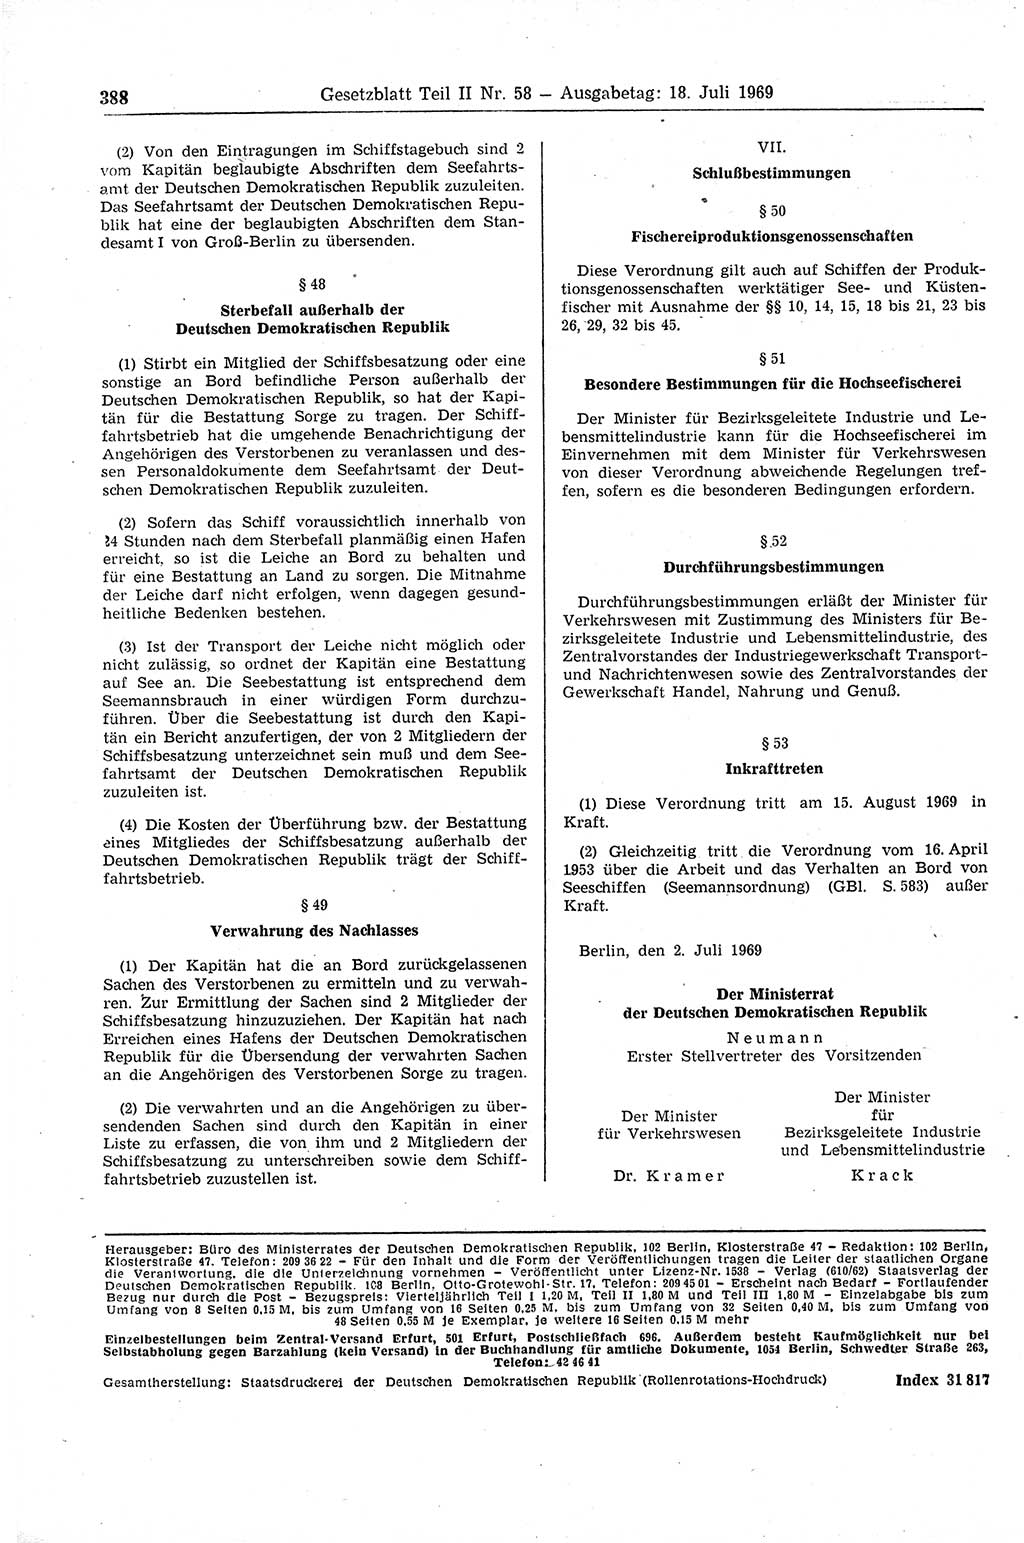 Gesetzblatt (GBl.) der Deutschen Demokratischen Republik (DDR) Teil ⅠⅠ 1969, Seite 388 (GBl. DDR ⅠⅠ 1969, S. 388)